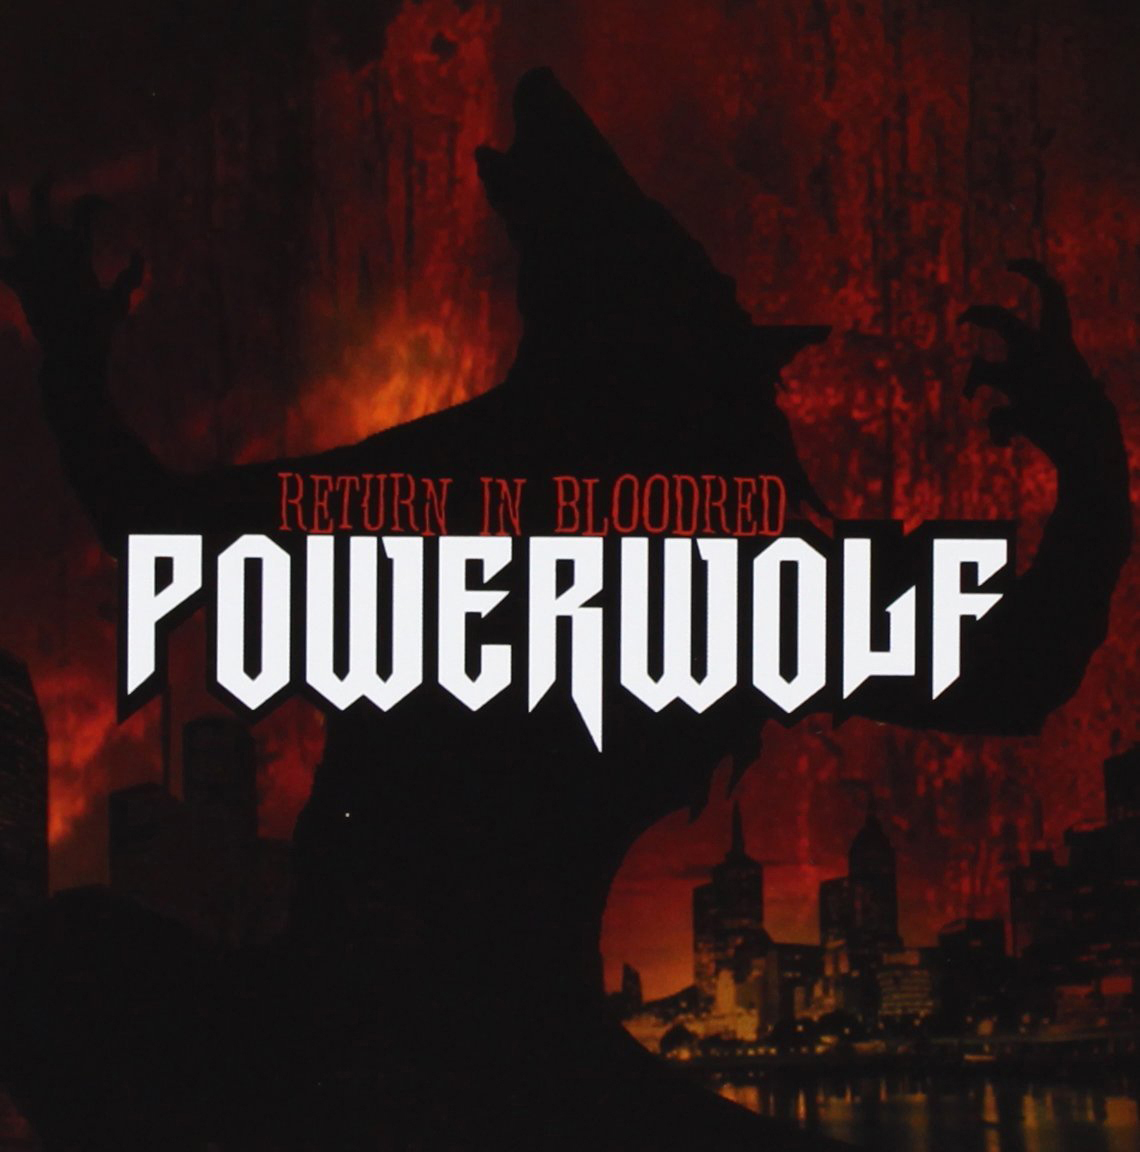 - Return (Vinyl) Powerwolf In - Bloodred